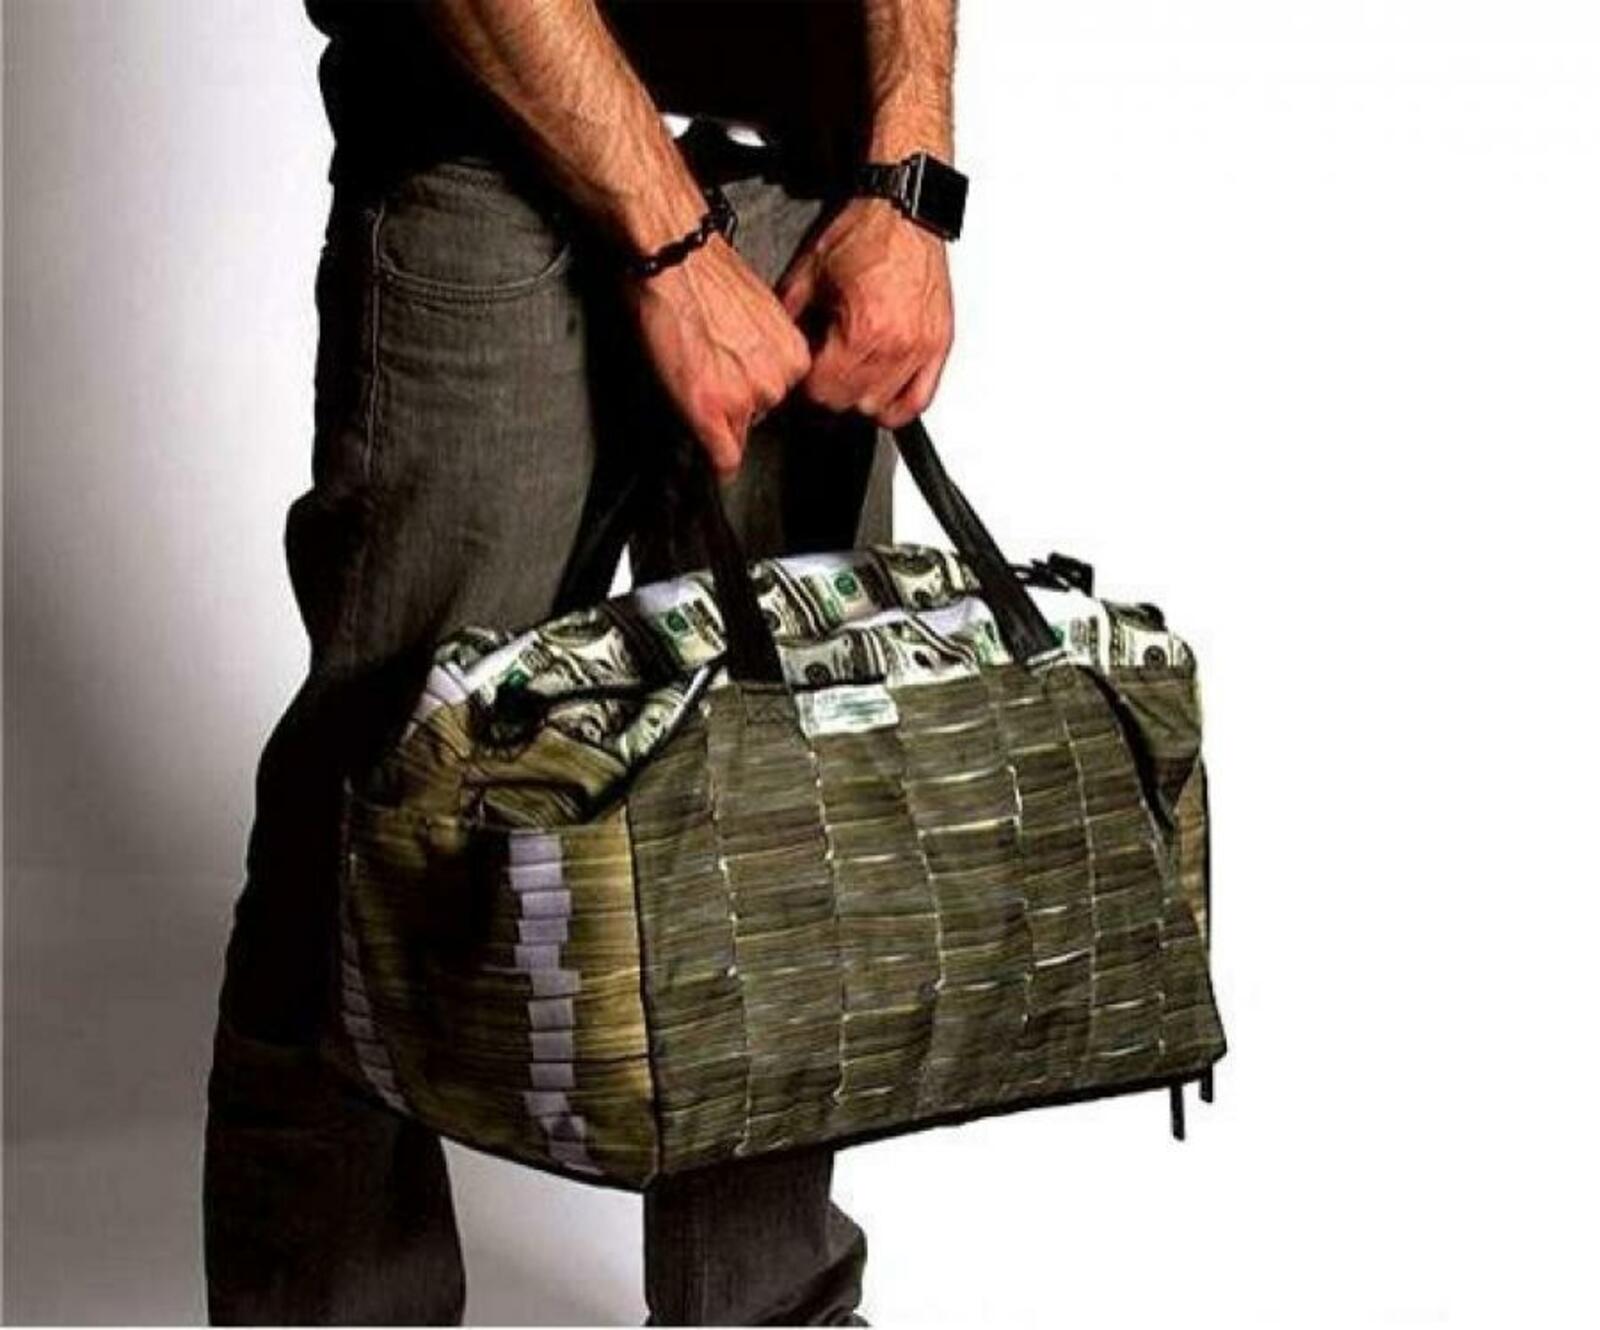 Поруча. Сумка с деньгами. Огромная сумка с деньгами. Чемодан с деньгами. Инкассаторская сумка с деньгами.